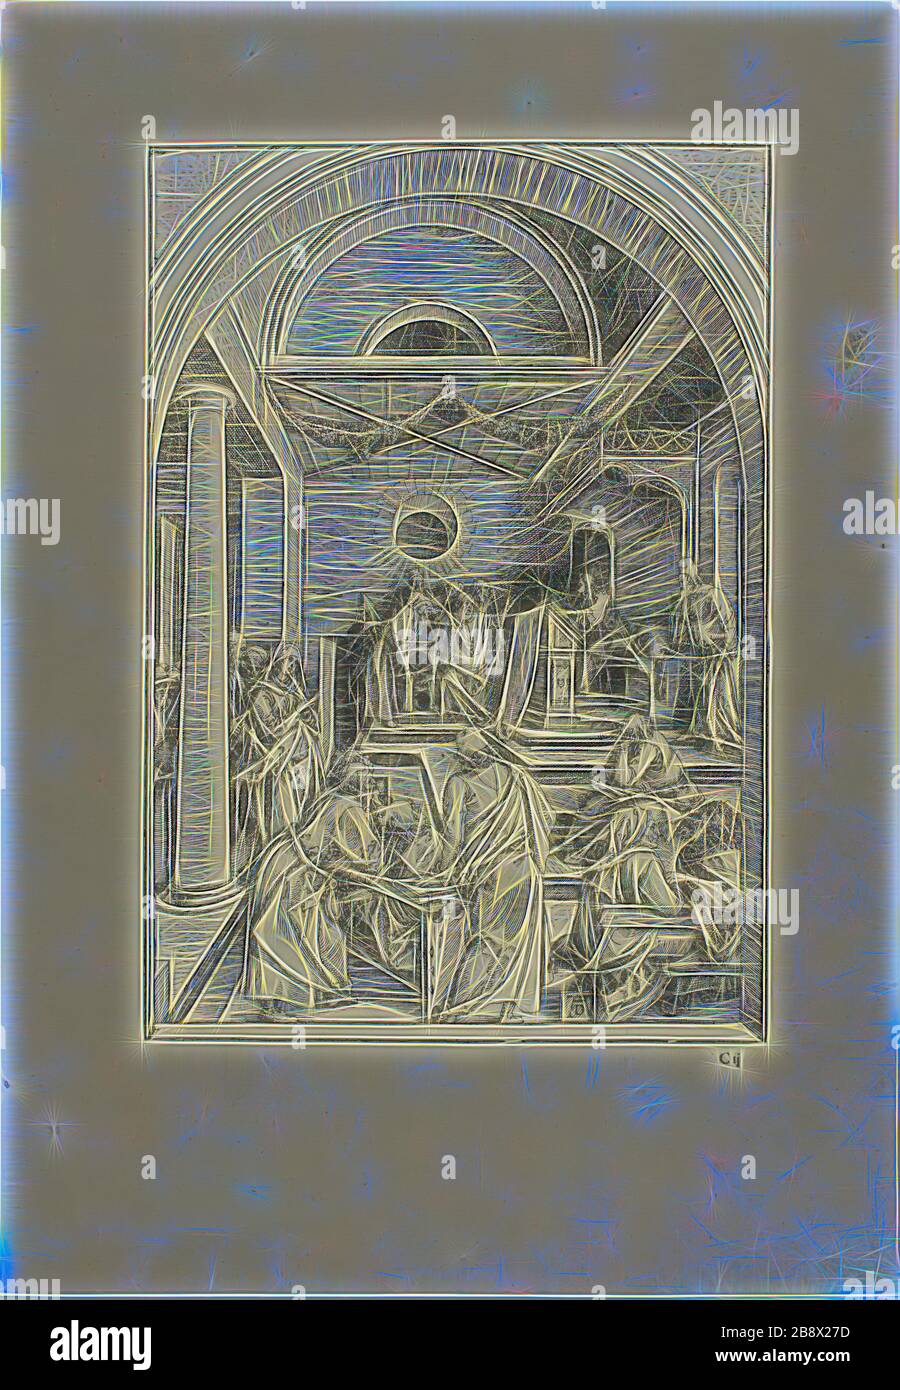 Cristo tra i Dottori, dalla vita della Vergine, c. 1503, pubblicato 1511, Albrecht Dürer, tedesco, 1471-1528, Germania, legno tagliato in nero su carta avorio posata, 299 x 208 mm (immagine), 433 x 300 mm (foglio), Reimagined da Gibon, disegno di calore allegro di luminosità e raggi di luce radianza. Arte classica reinventata con un tocco moderno. La fotografia ispirata al futurismo, che abbraccia l'energia dinamica della tecnologia moderna, del movimento, della velocità e rivoluziona la cultura. Foto Stock